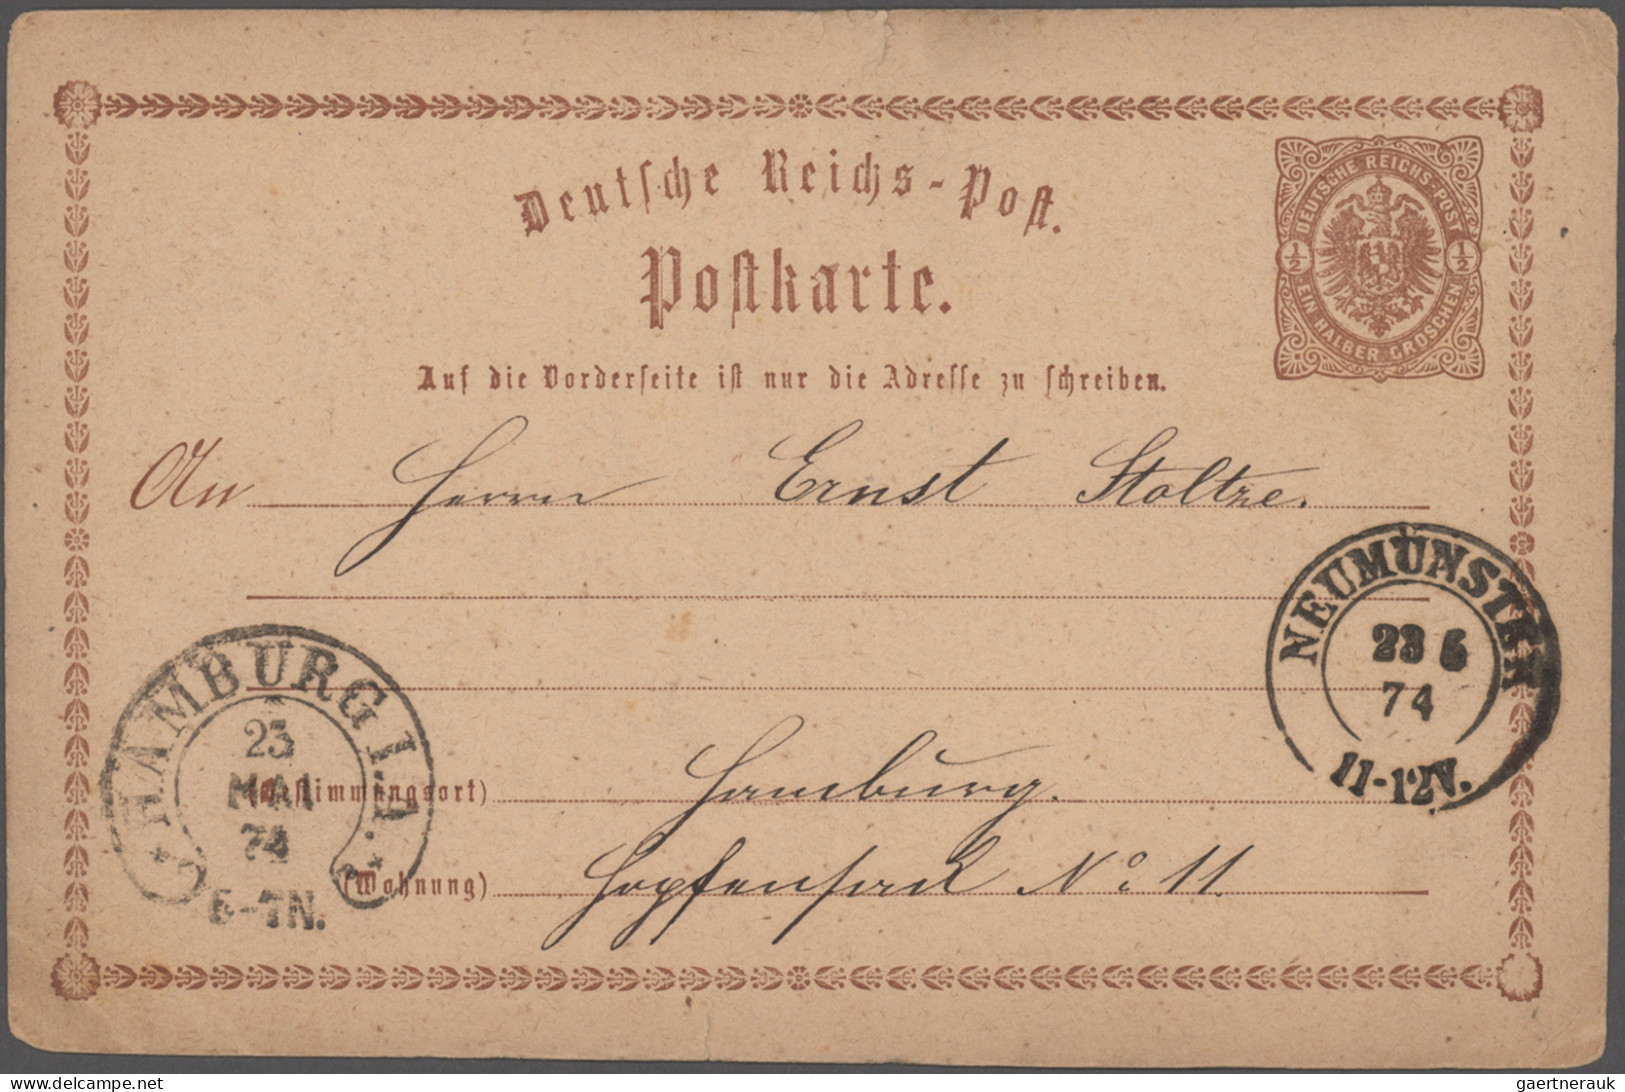 Deutsches Reich - Hufeisenstempel: 1874/1879, HAMBURG, sieben eingehende Karten